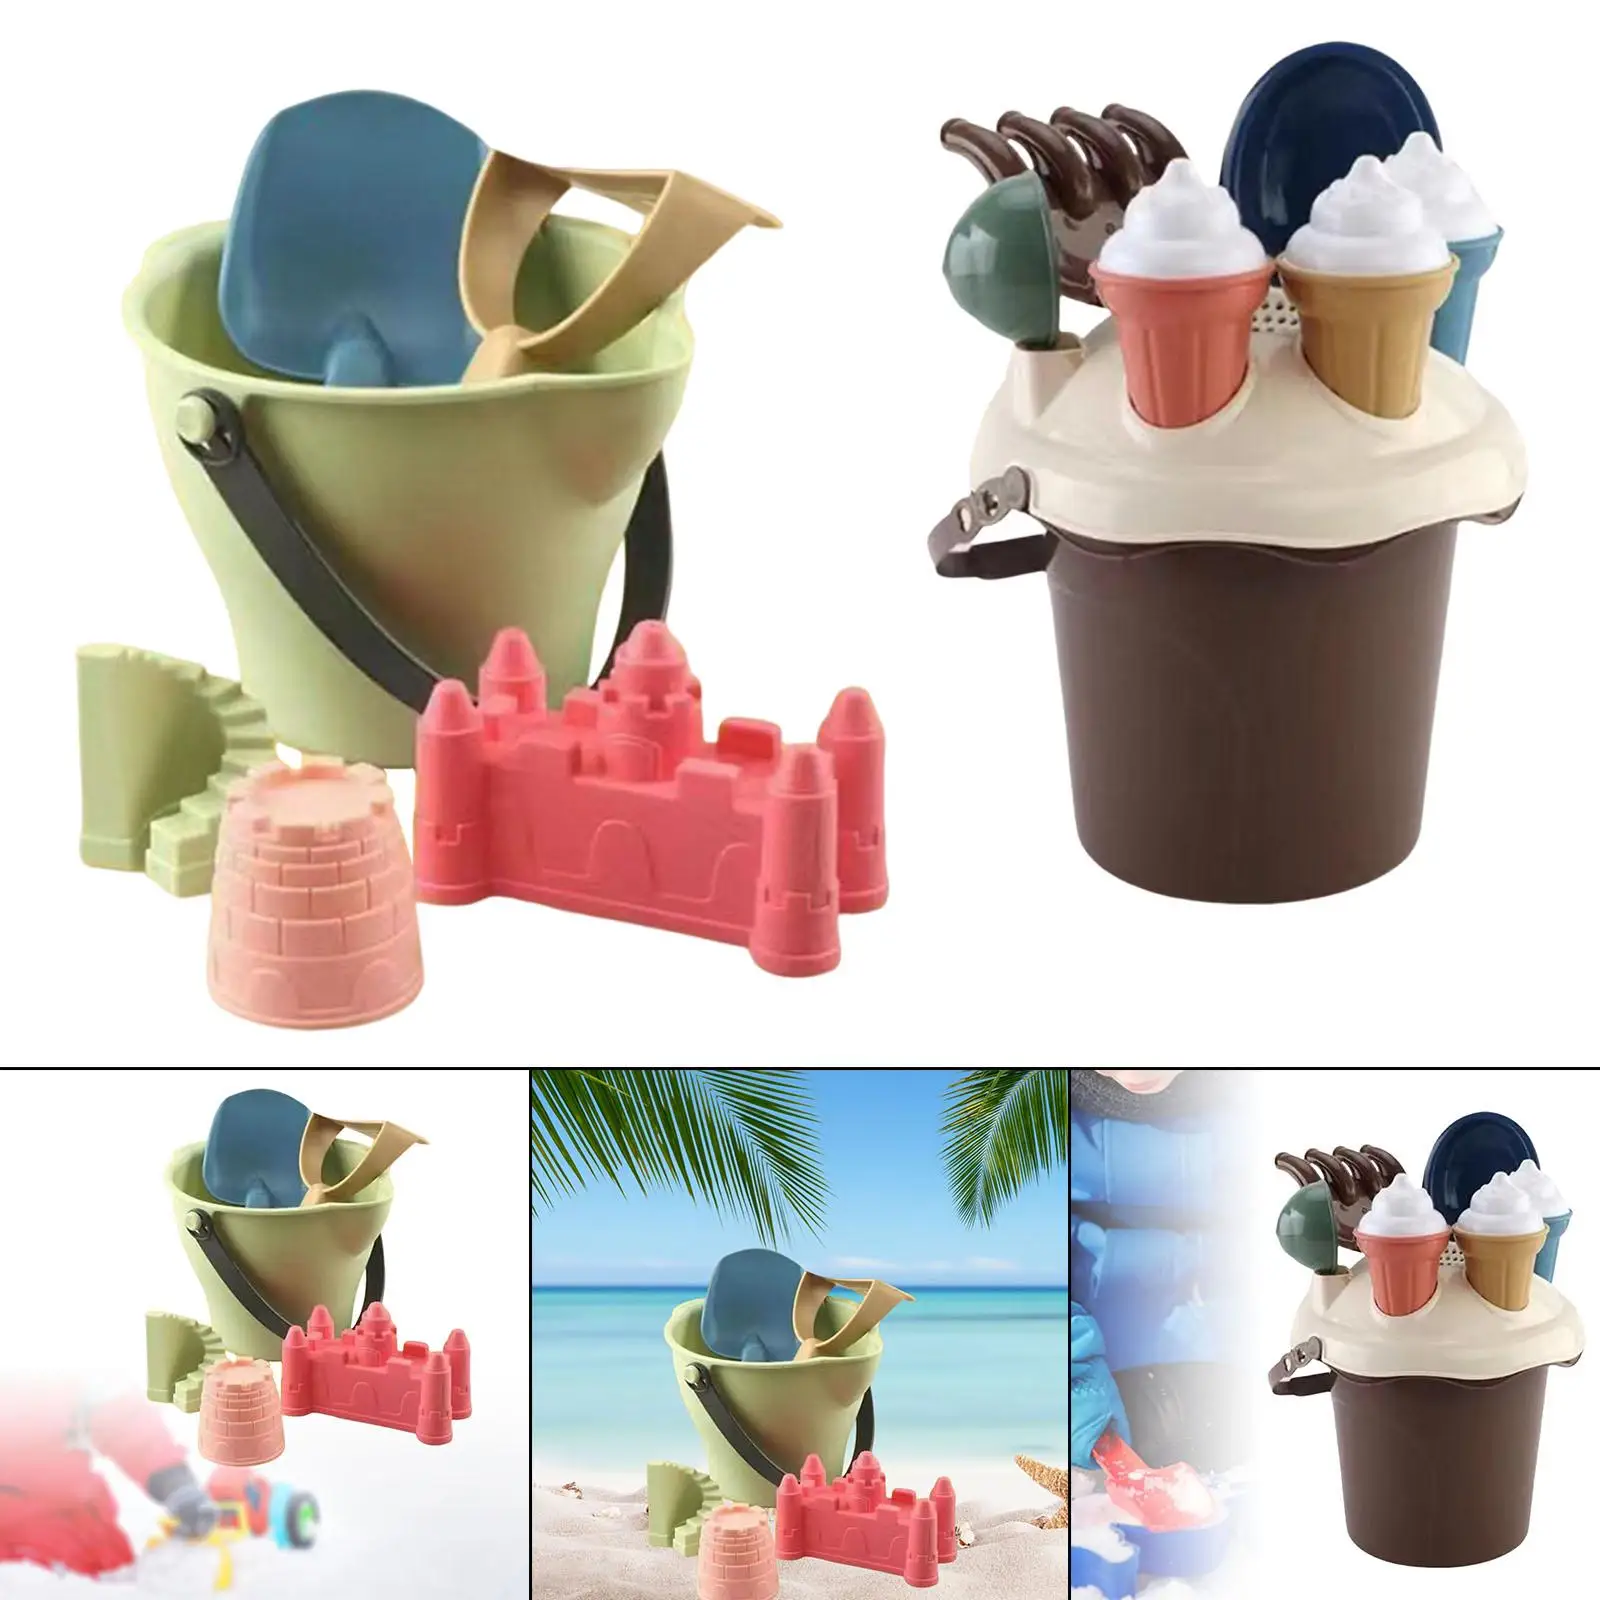 Travel Sand Toys Castle Kit Outdoor Indoor Play Gift Summer Sandbox Toys for Children Boys Girls Toddler Kids